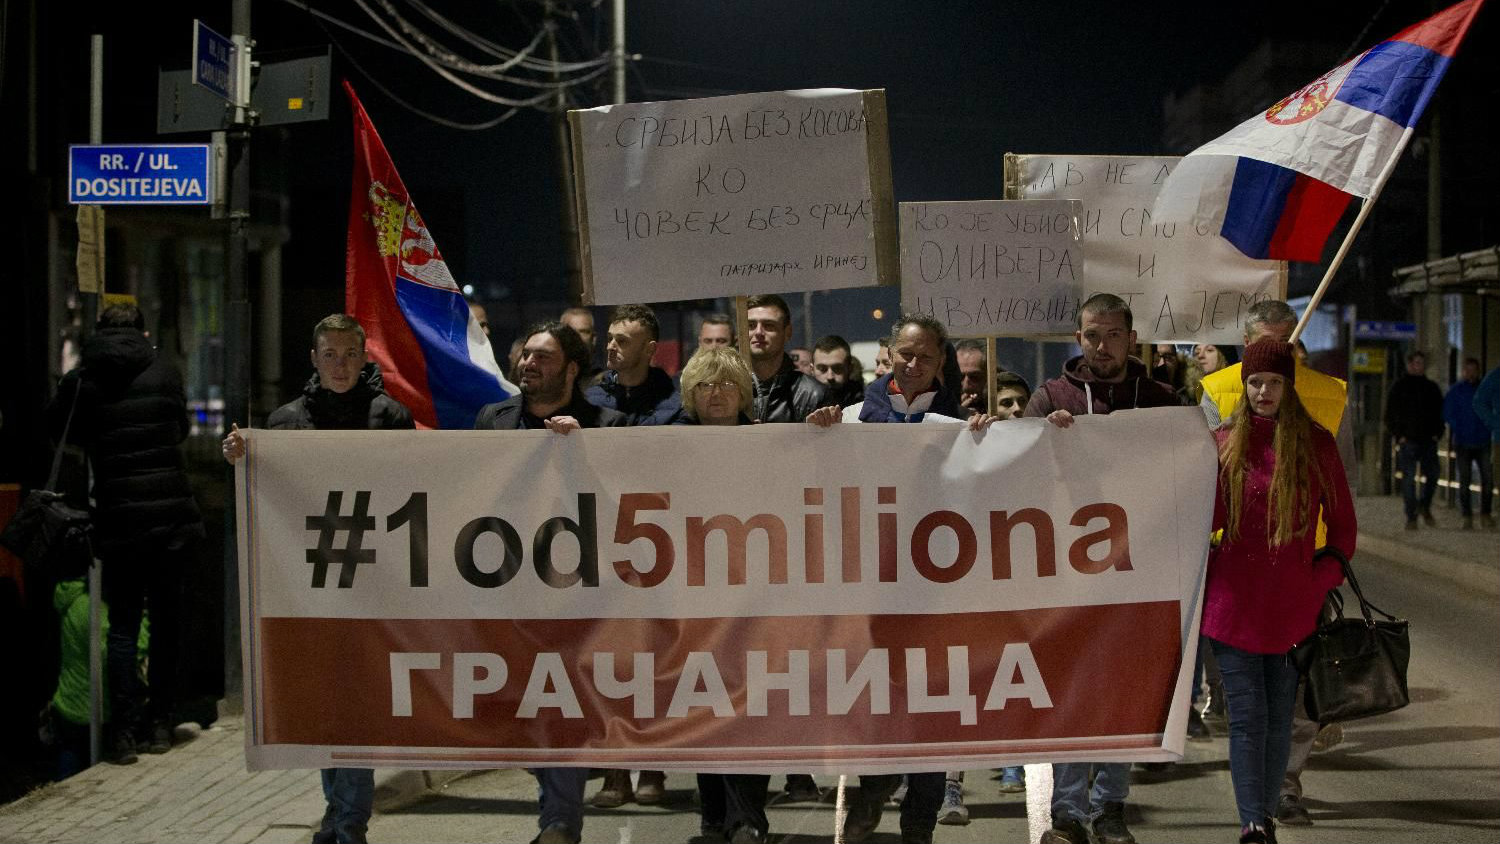 Protest "1 od 5 miliona" večeras u Gračanici i Kosovskoj Mitrovici: Ista maršruta, isti ciljevi 1